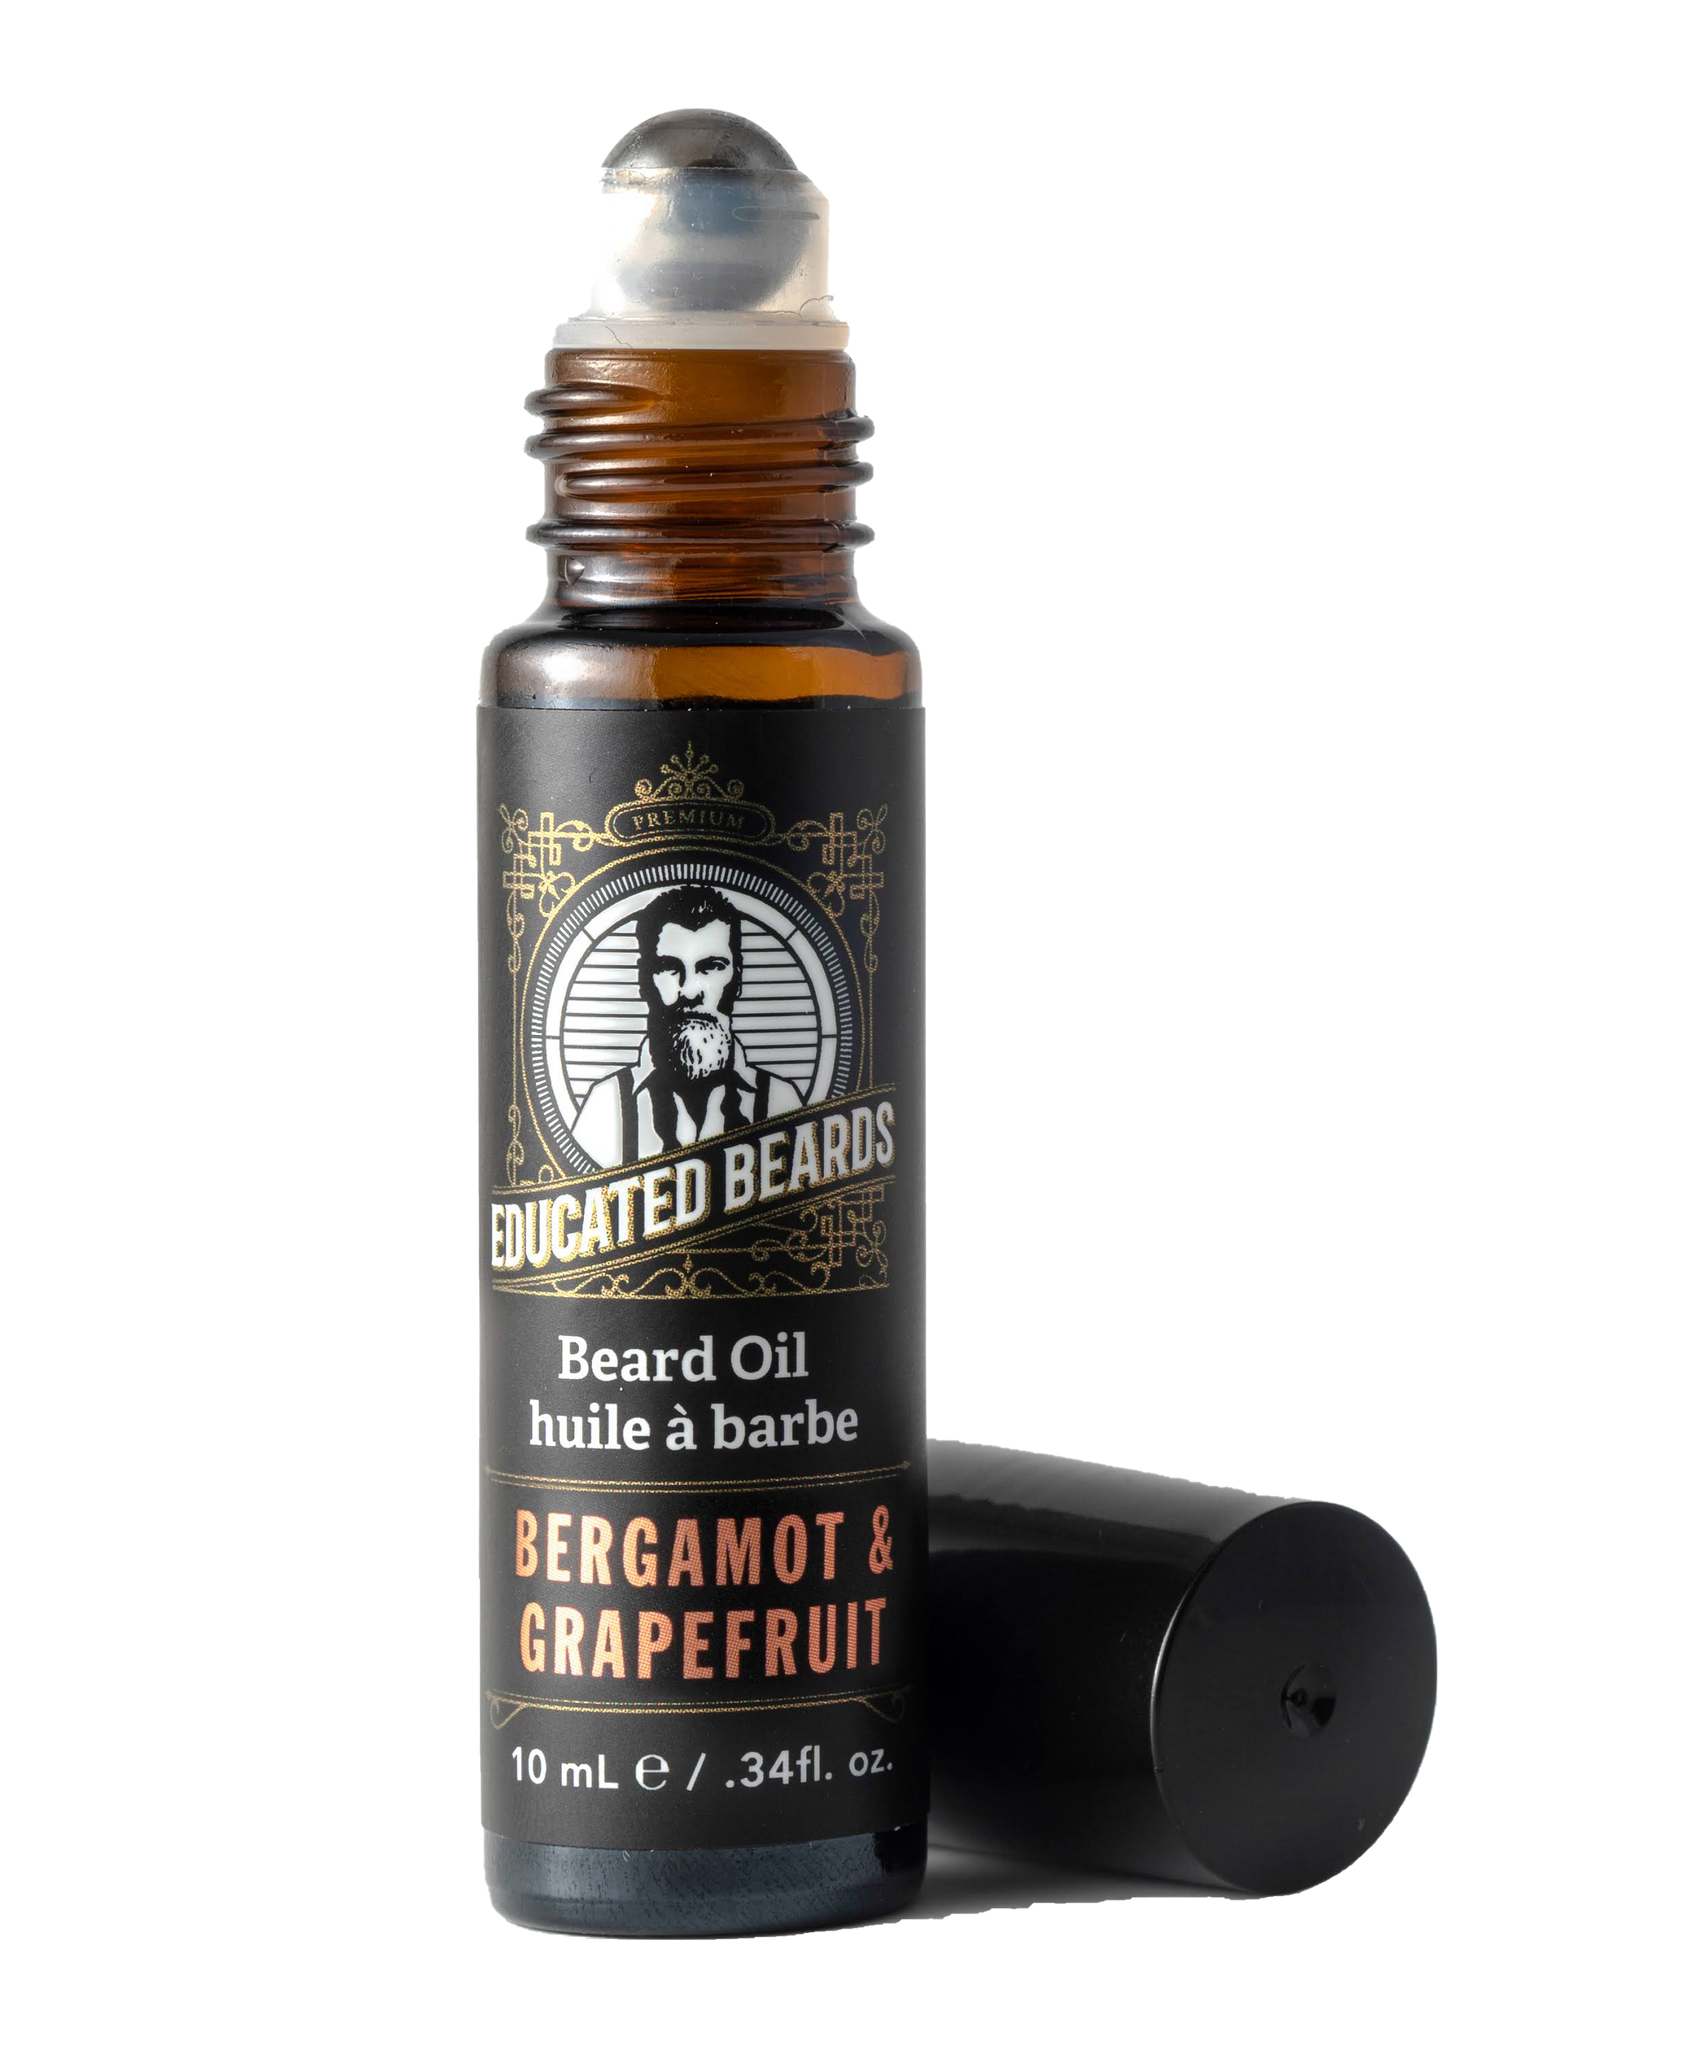 Bergamot Grapefruit Beard Oil 10ml/.34fl.oz